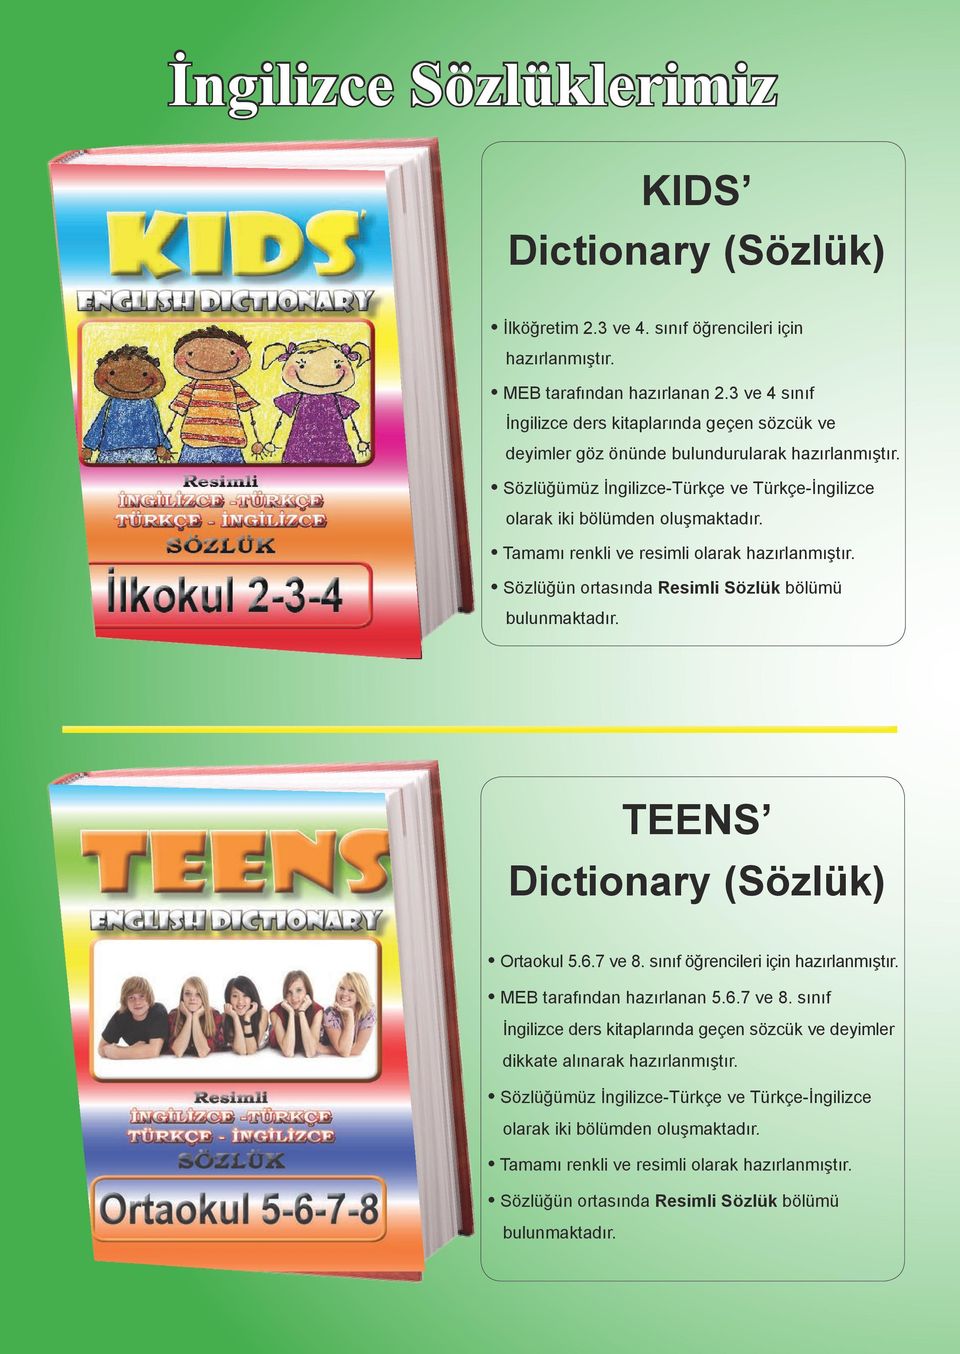 Tamamı renkli ve resimli olarak Sözlüğün ortasında Resimli Sözlük bölümü bulunmaktadır. TEENS Dictionary (Sözlük) Ortaokul 5.6.7 ve 8.